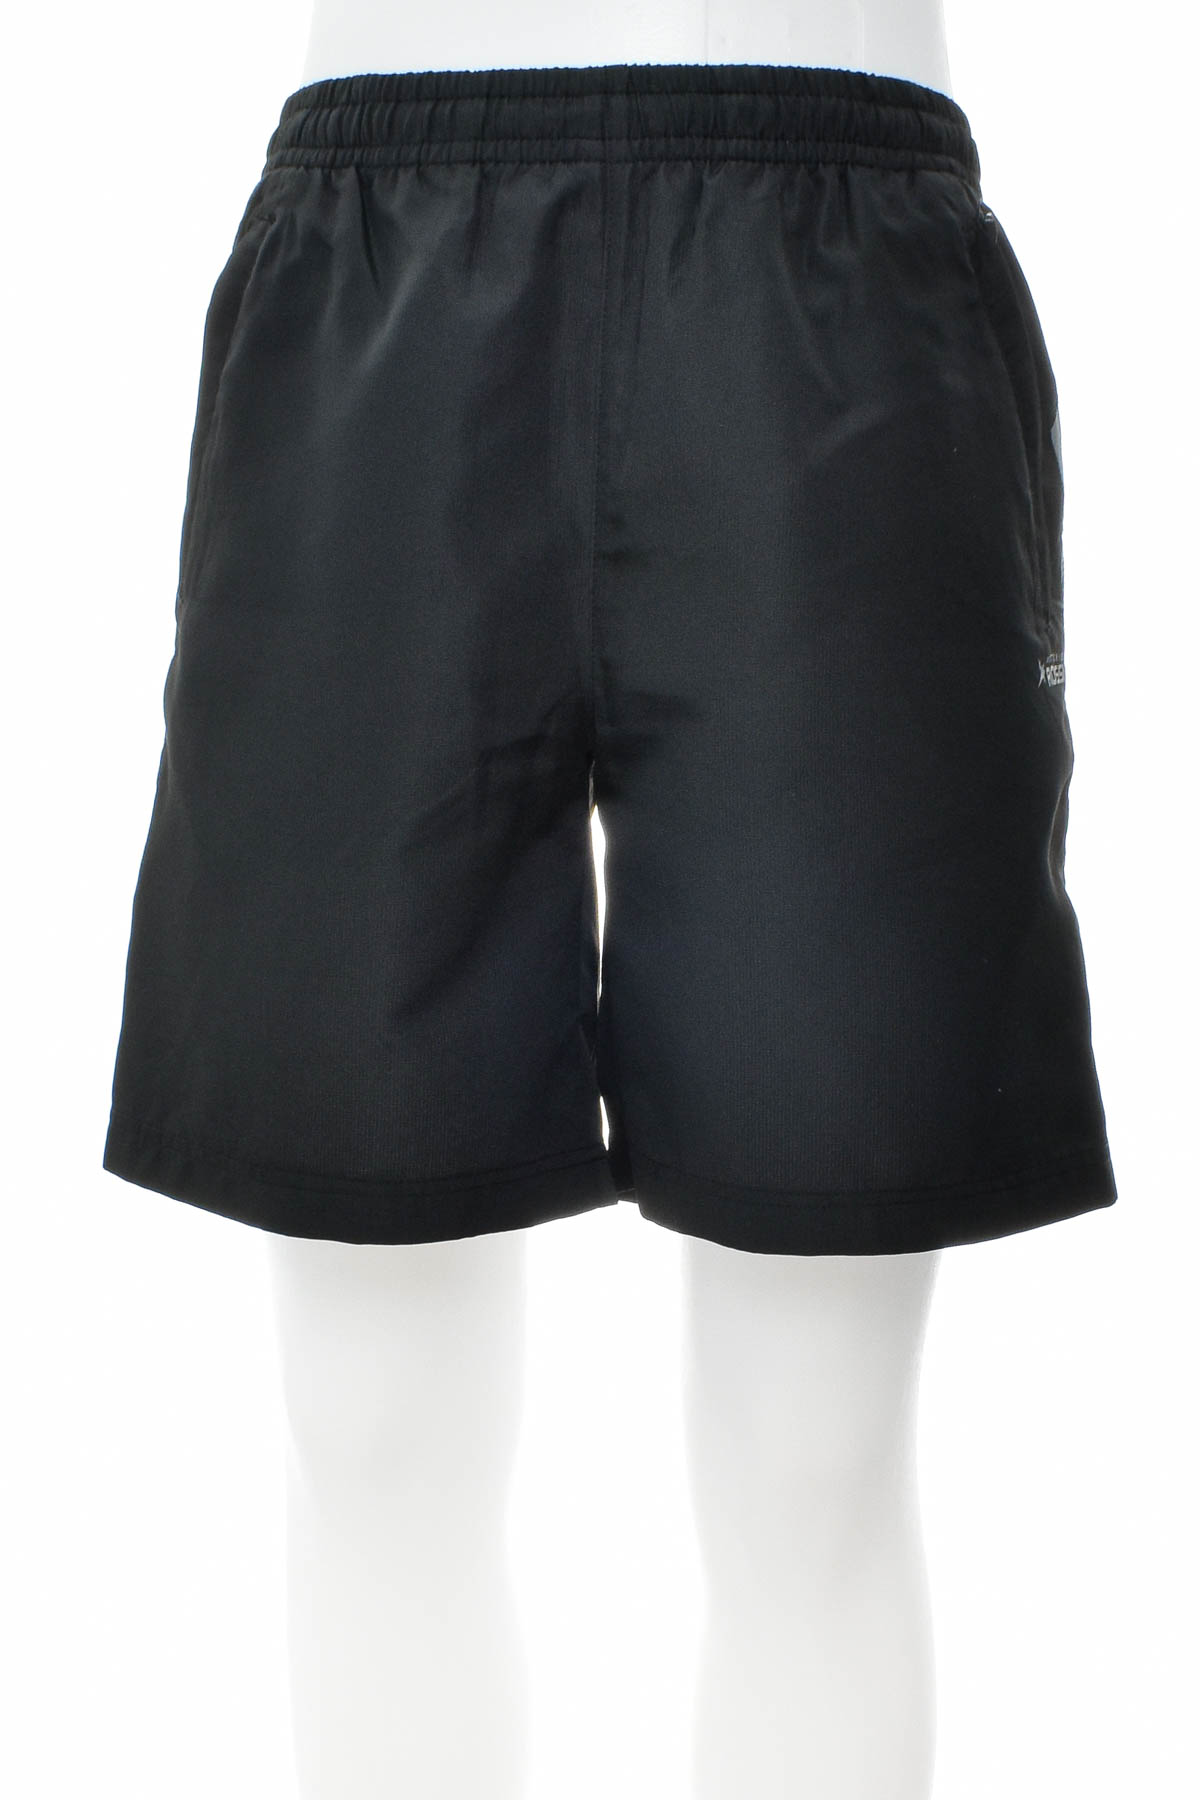 Men's shorts - Vittorio Rossi - 0